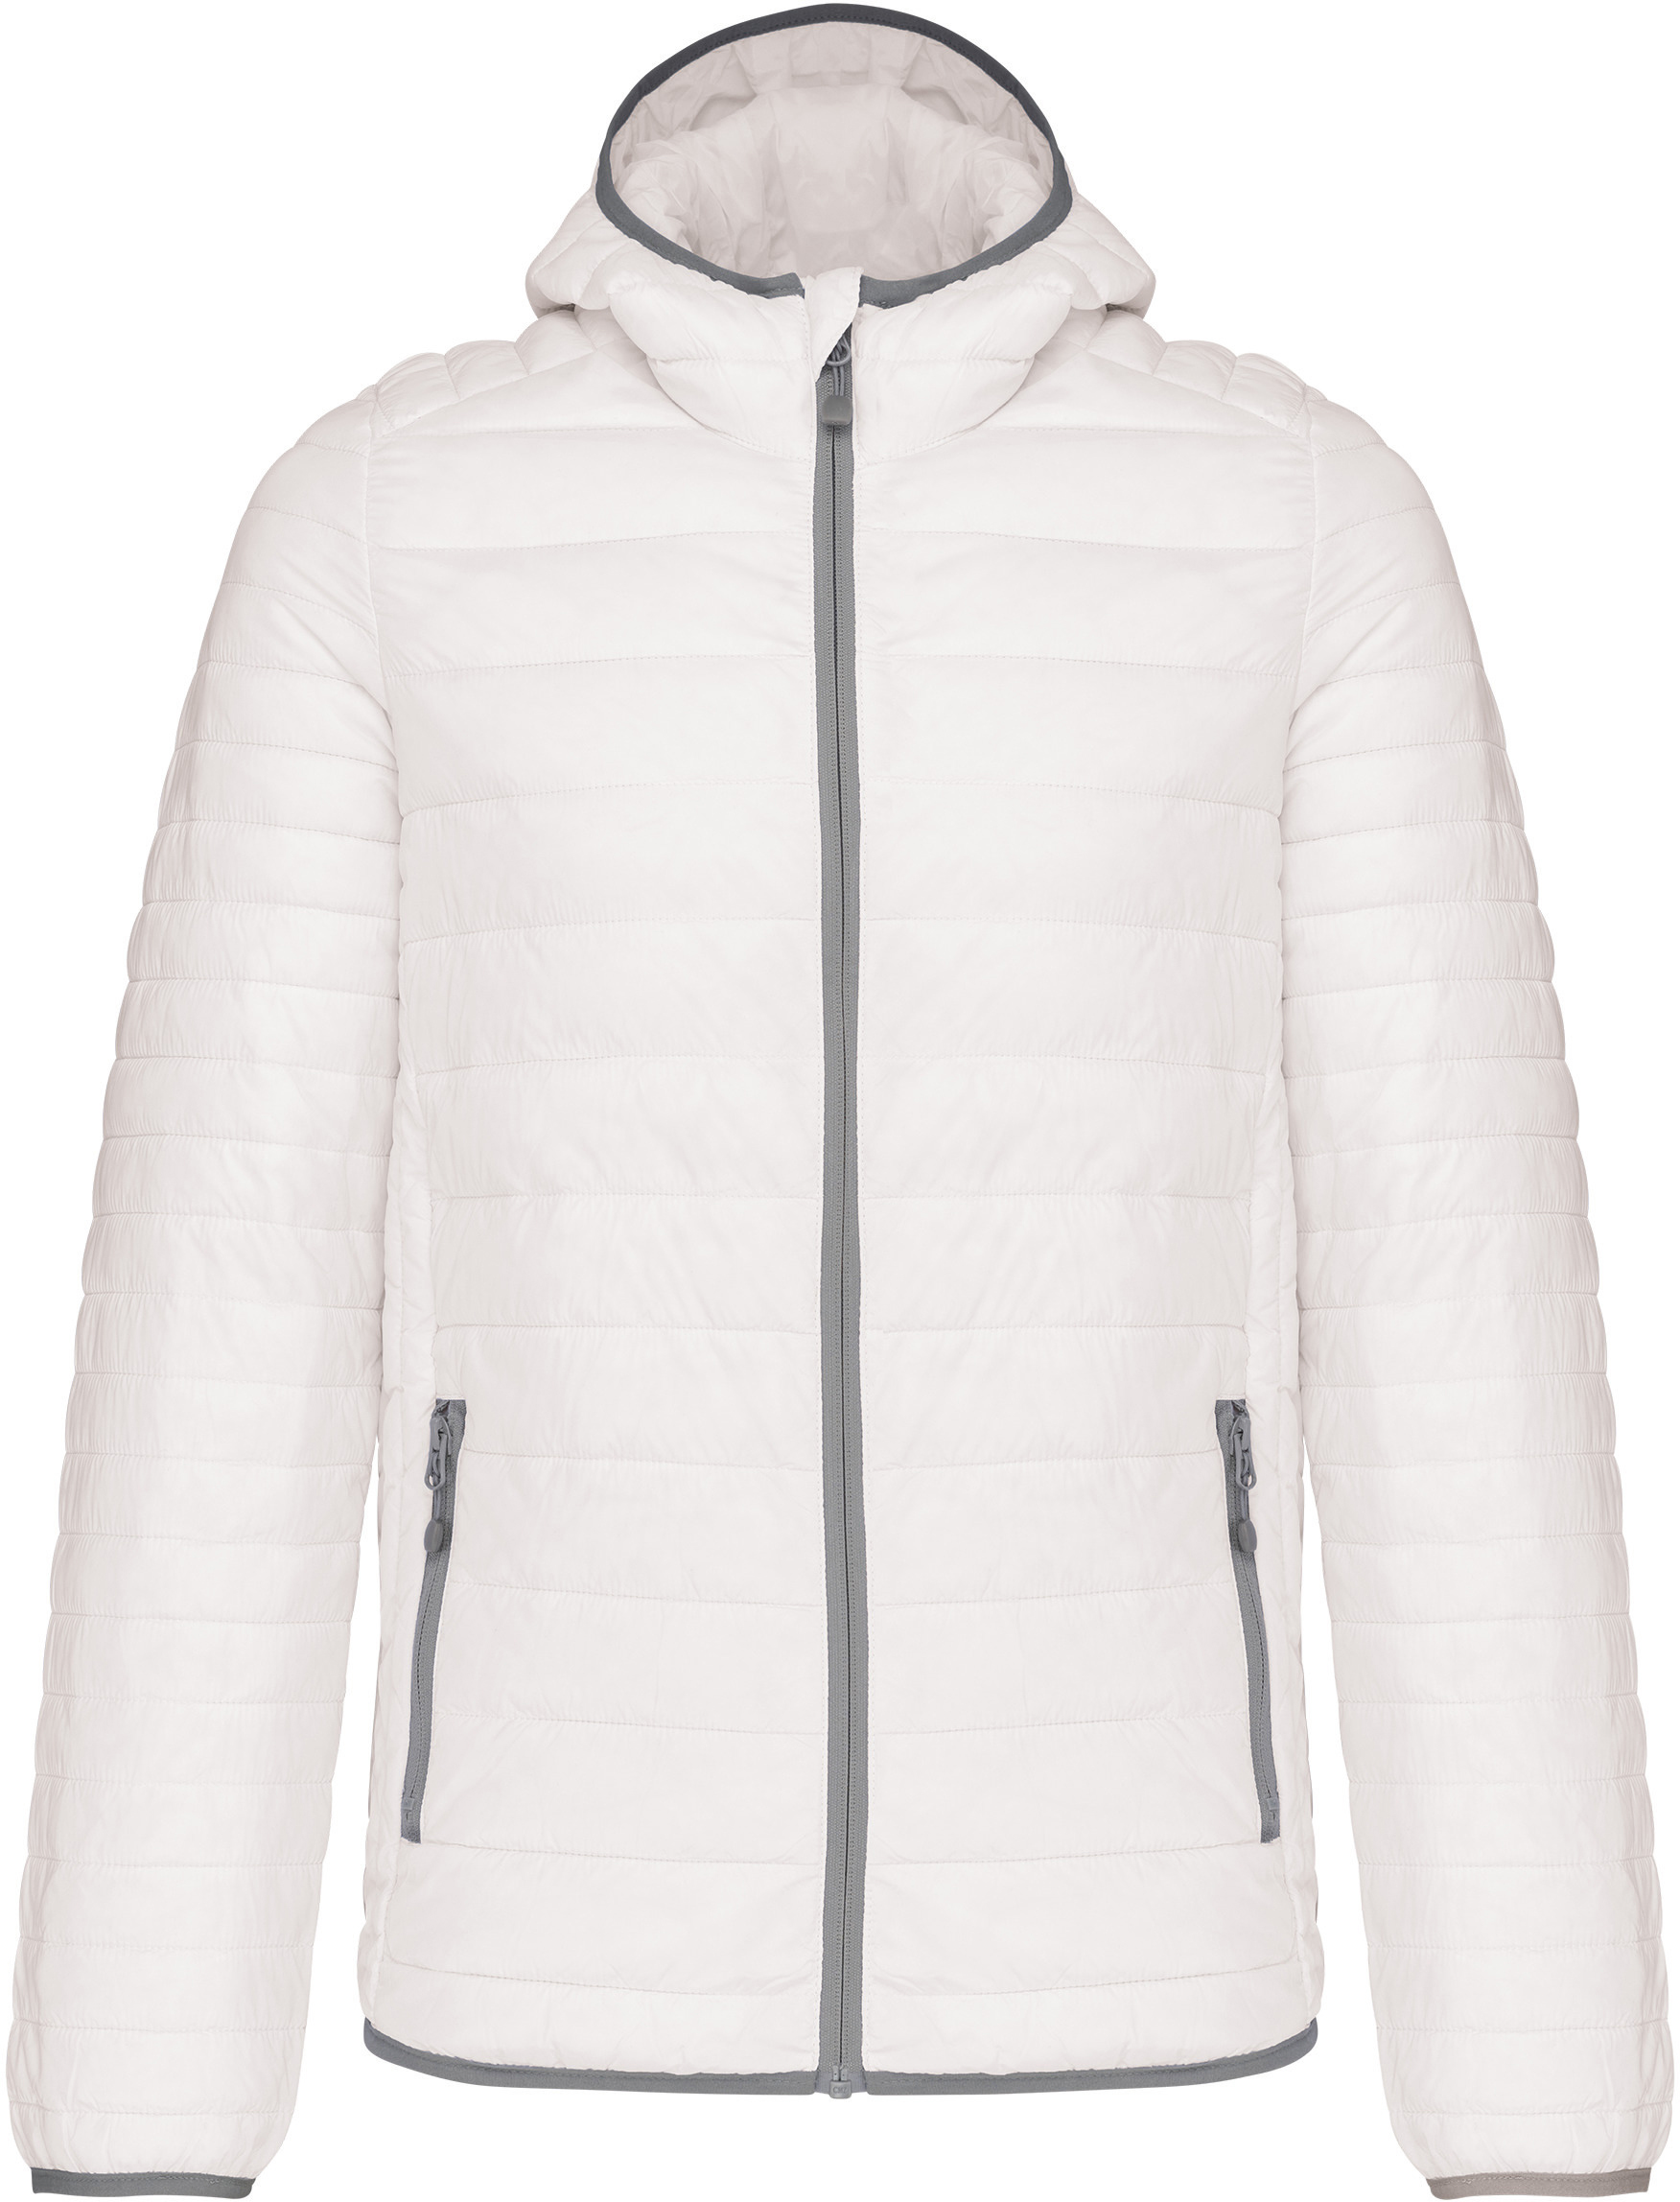 Pánská lehká zateplená bunda Down Jacket K6110 Barva: bílá, Velikost: S